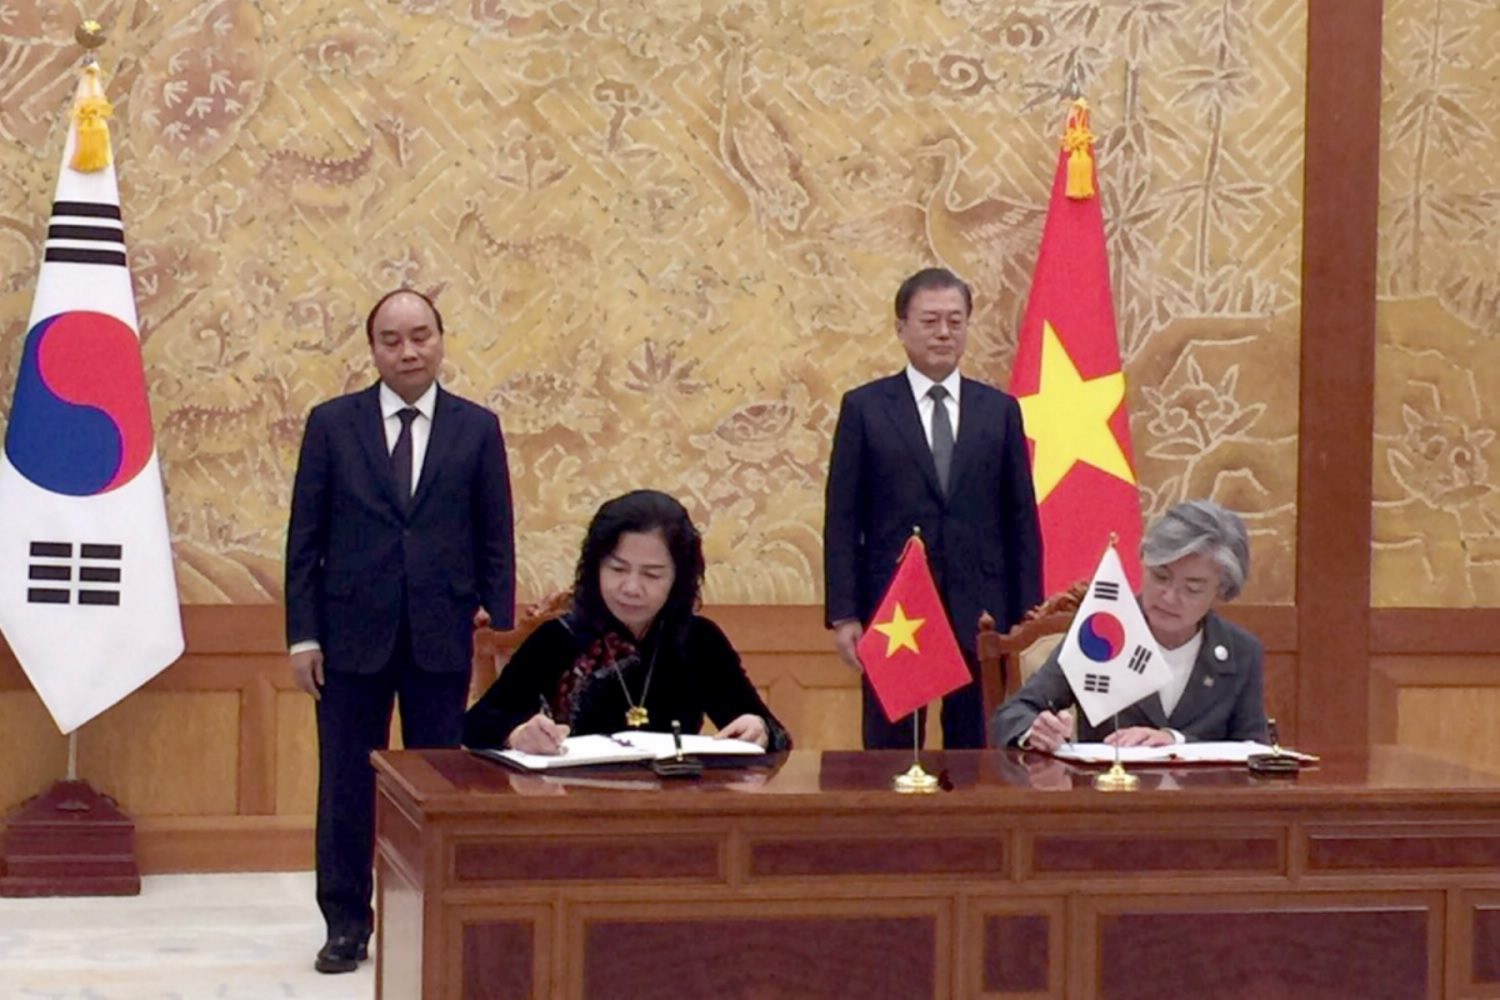 Hiệp định Việt Nam-Hàn Quốc: Hiệp định thương mại tự do giữa Việt Nam và Hàn Quốc mang lại nhiều cơ hội mới cho các doanh nghiệp và sản phẩm Việt Nam. Với việc giảm các rào cản thương mại và tăng cường quan hệ kinh tế giữa hai nước, mọi người sẽ được hưởng lợi từ các sản phẩm chất lượng cao với giá cả hợp lý. Hãy cùng nhau tìm hiểu về Hiệp định này và cập nhật những thông tin mới nhất từ nó.